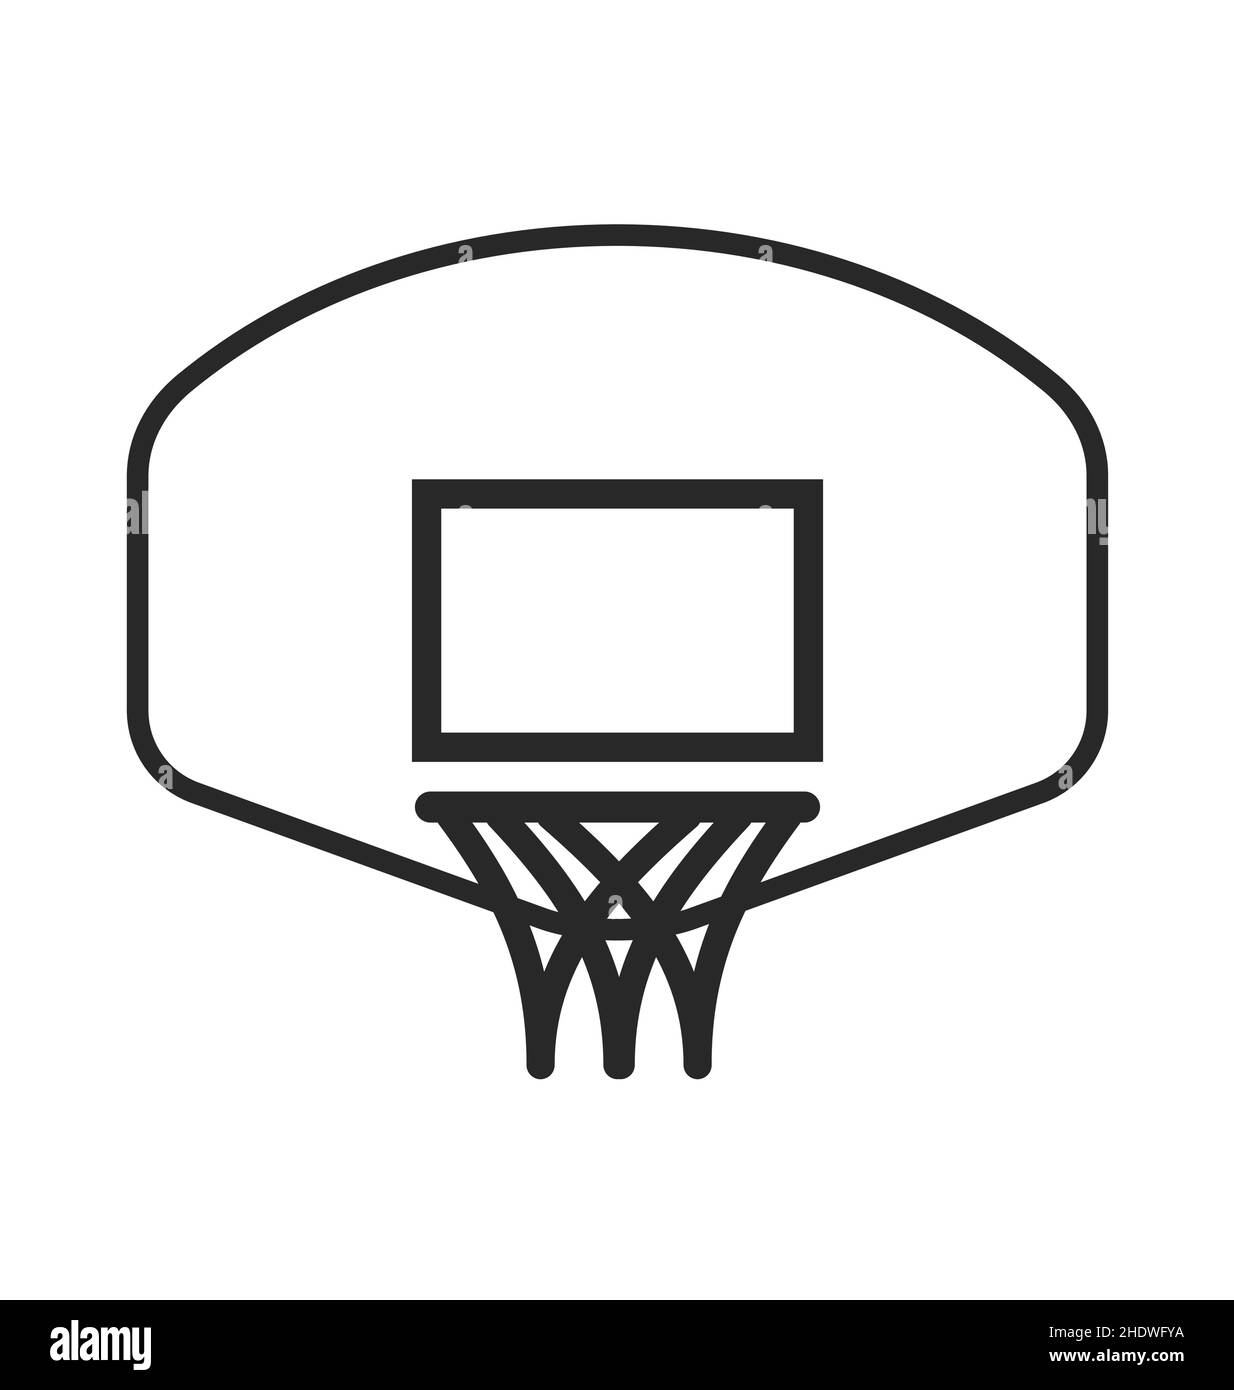 logo de basket-ball simple ligne dessin anneau de cerceau et vecteur de fond isolé sur fond blanc Illustration de Vecteur